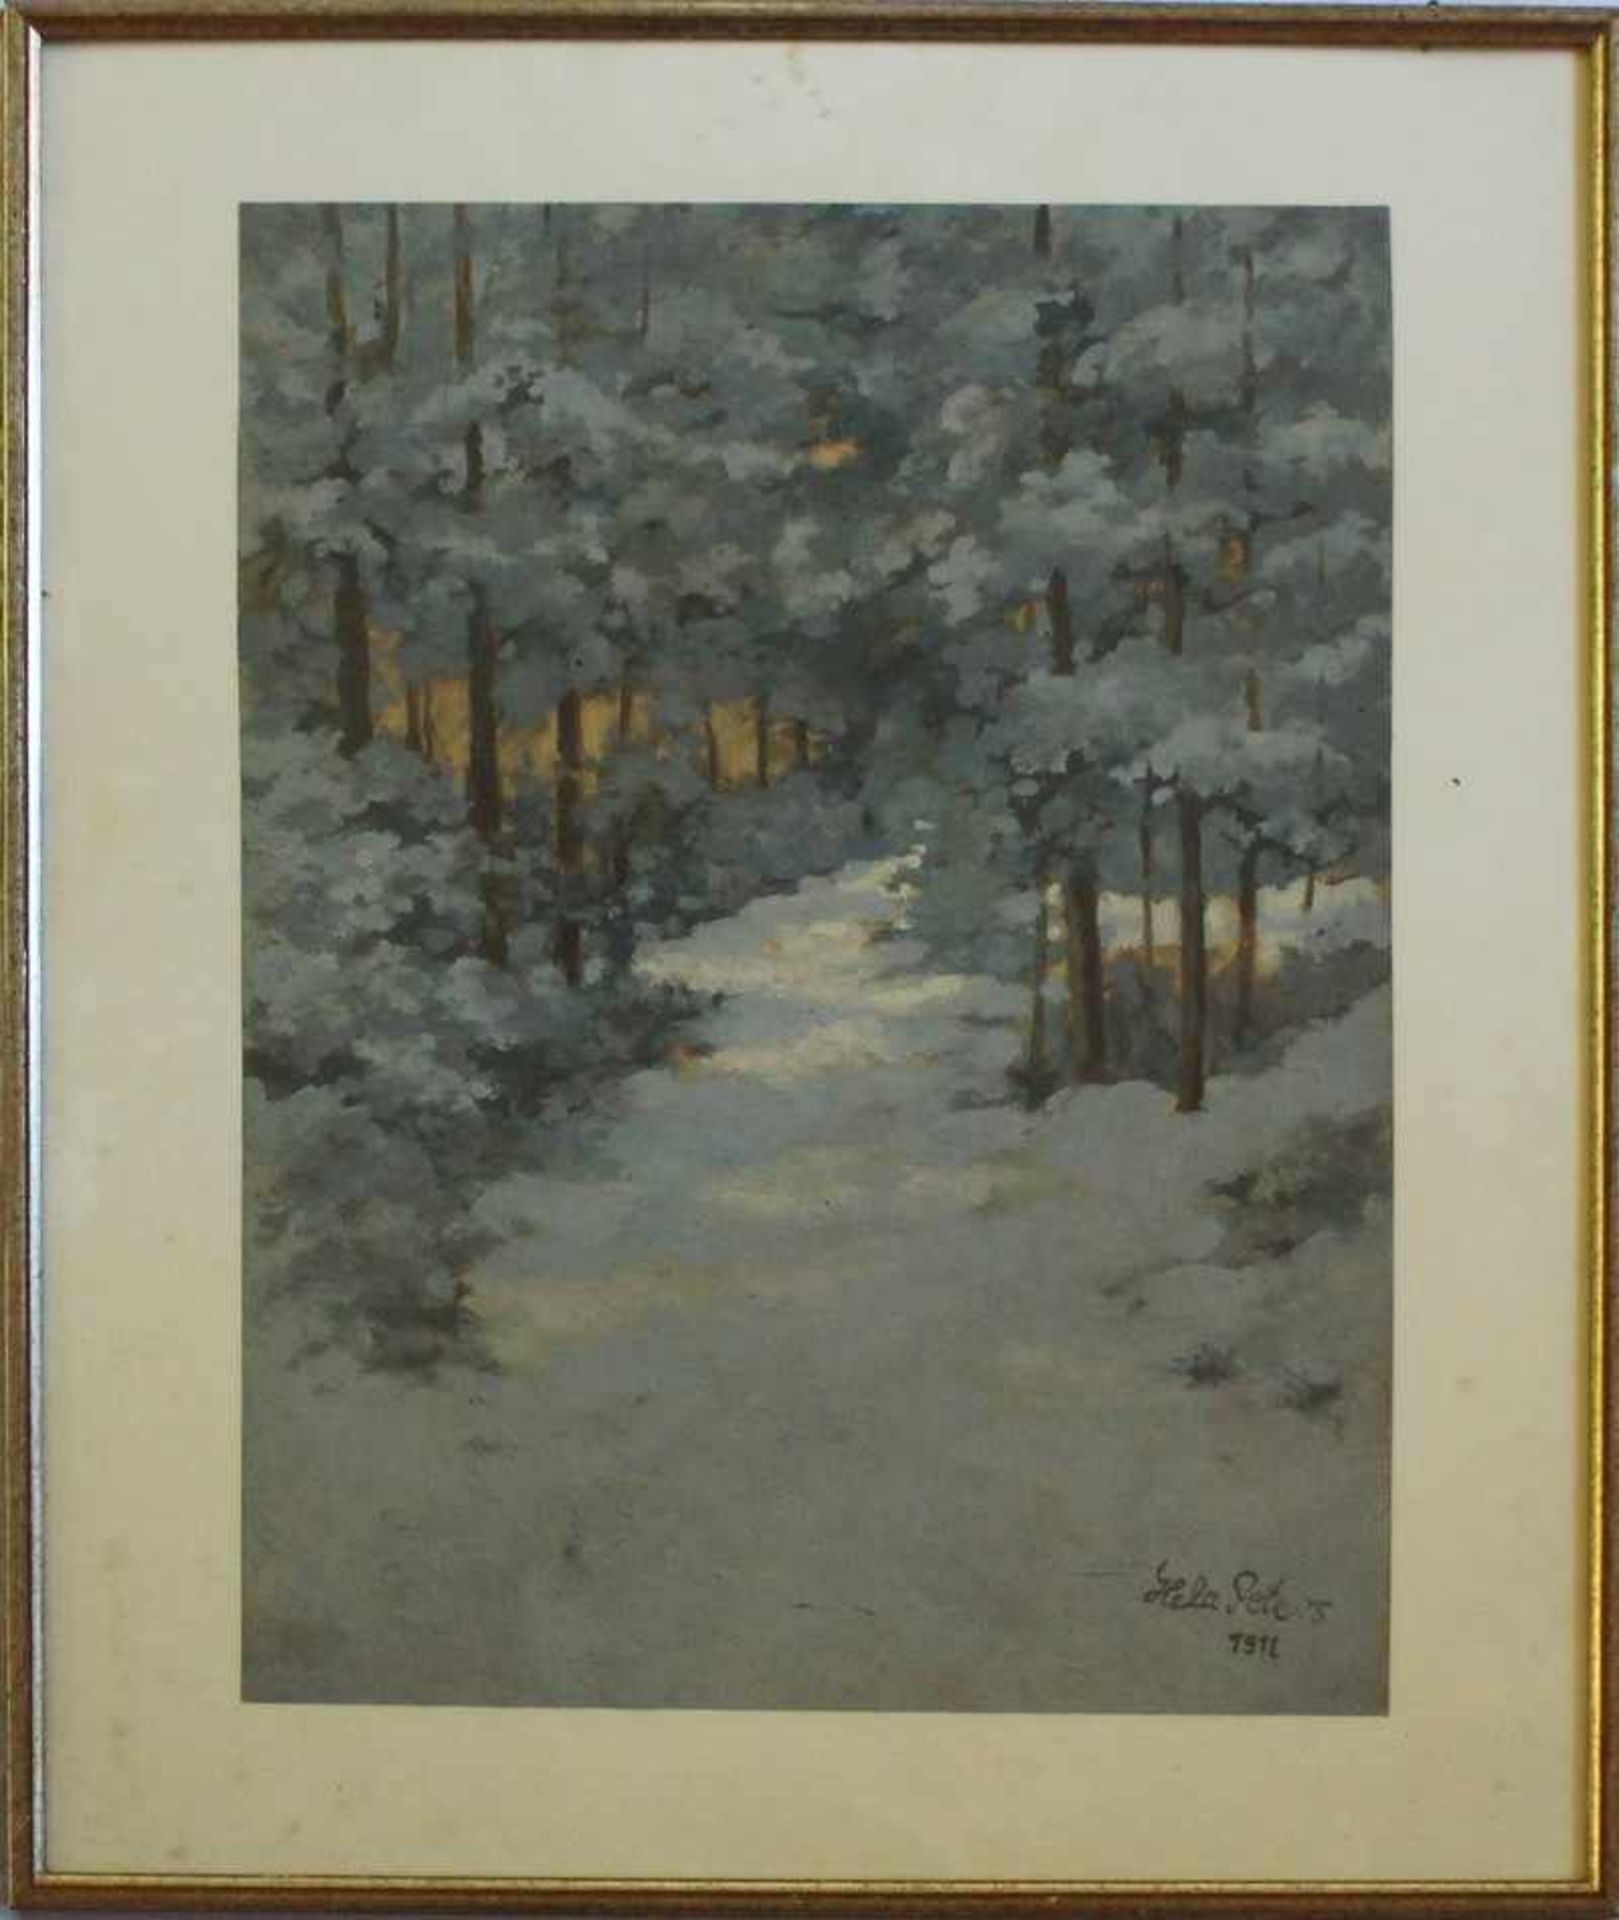 Peters, Hela 1885 Schwedt - 1973 Bonn, "Verschneiter Waldweg", Mischtechnik, kühle Farbpalette,